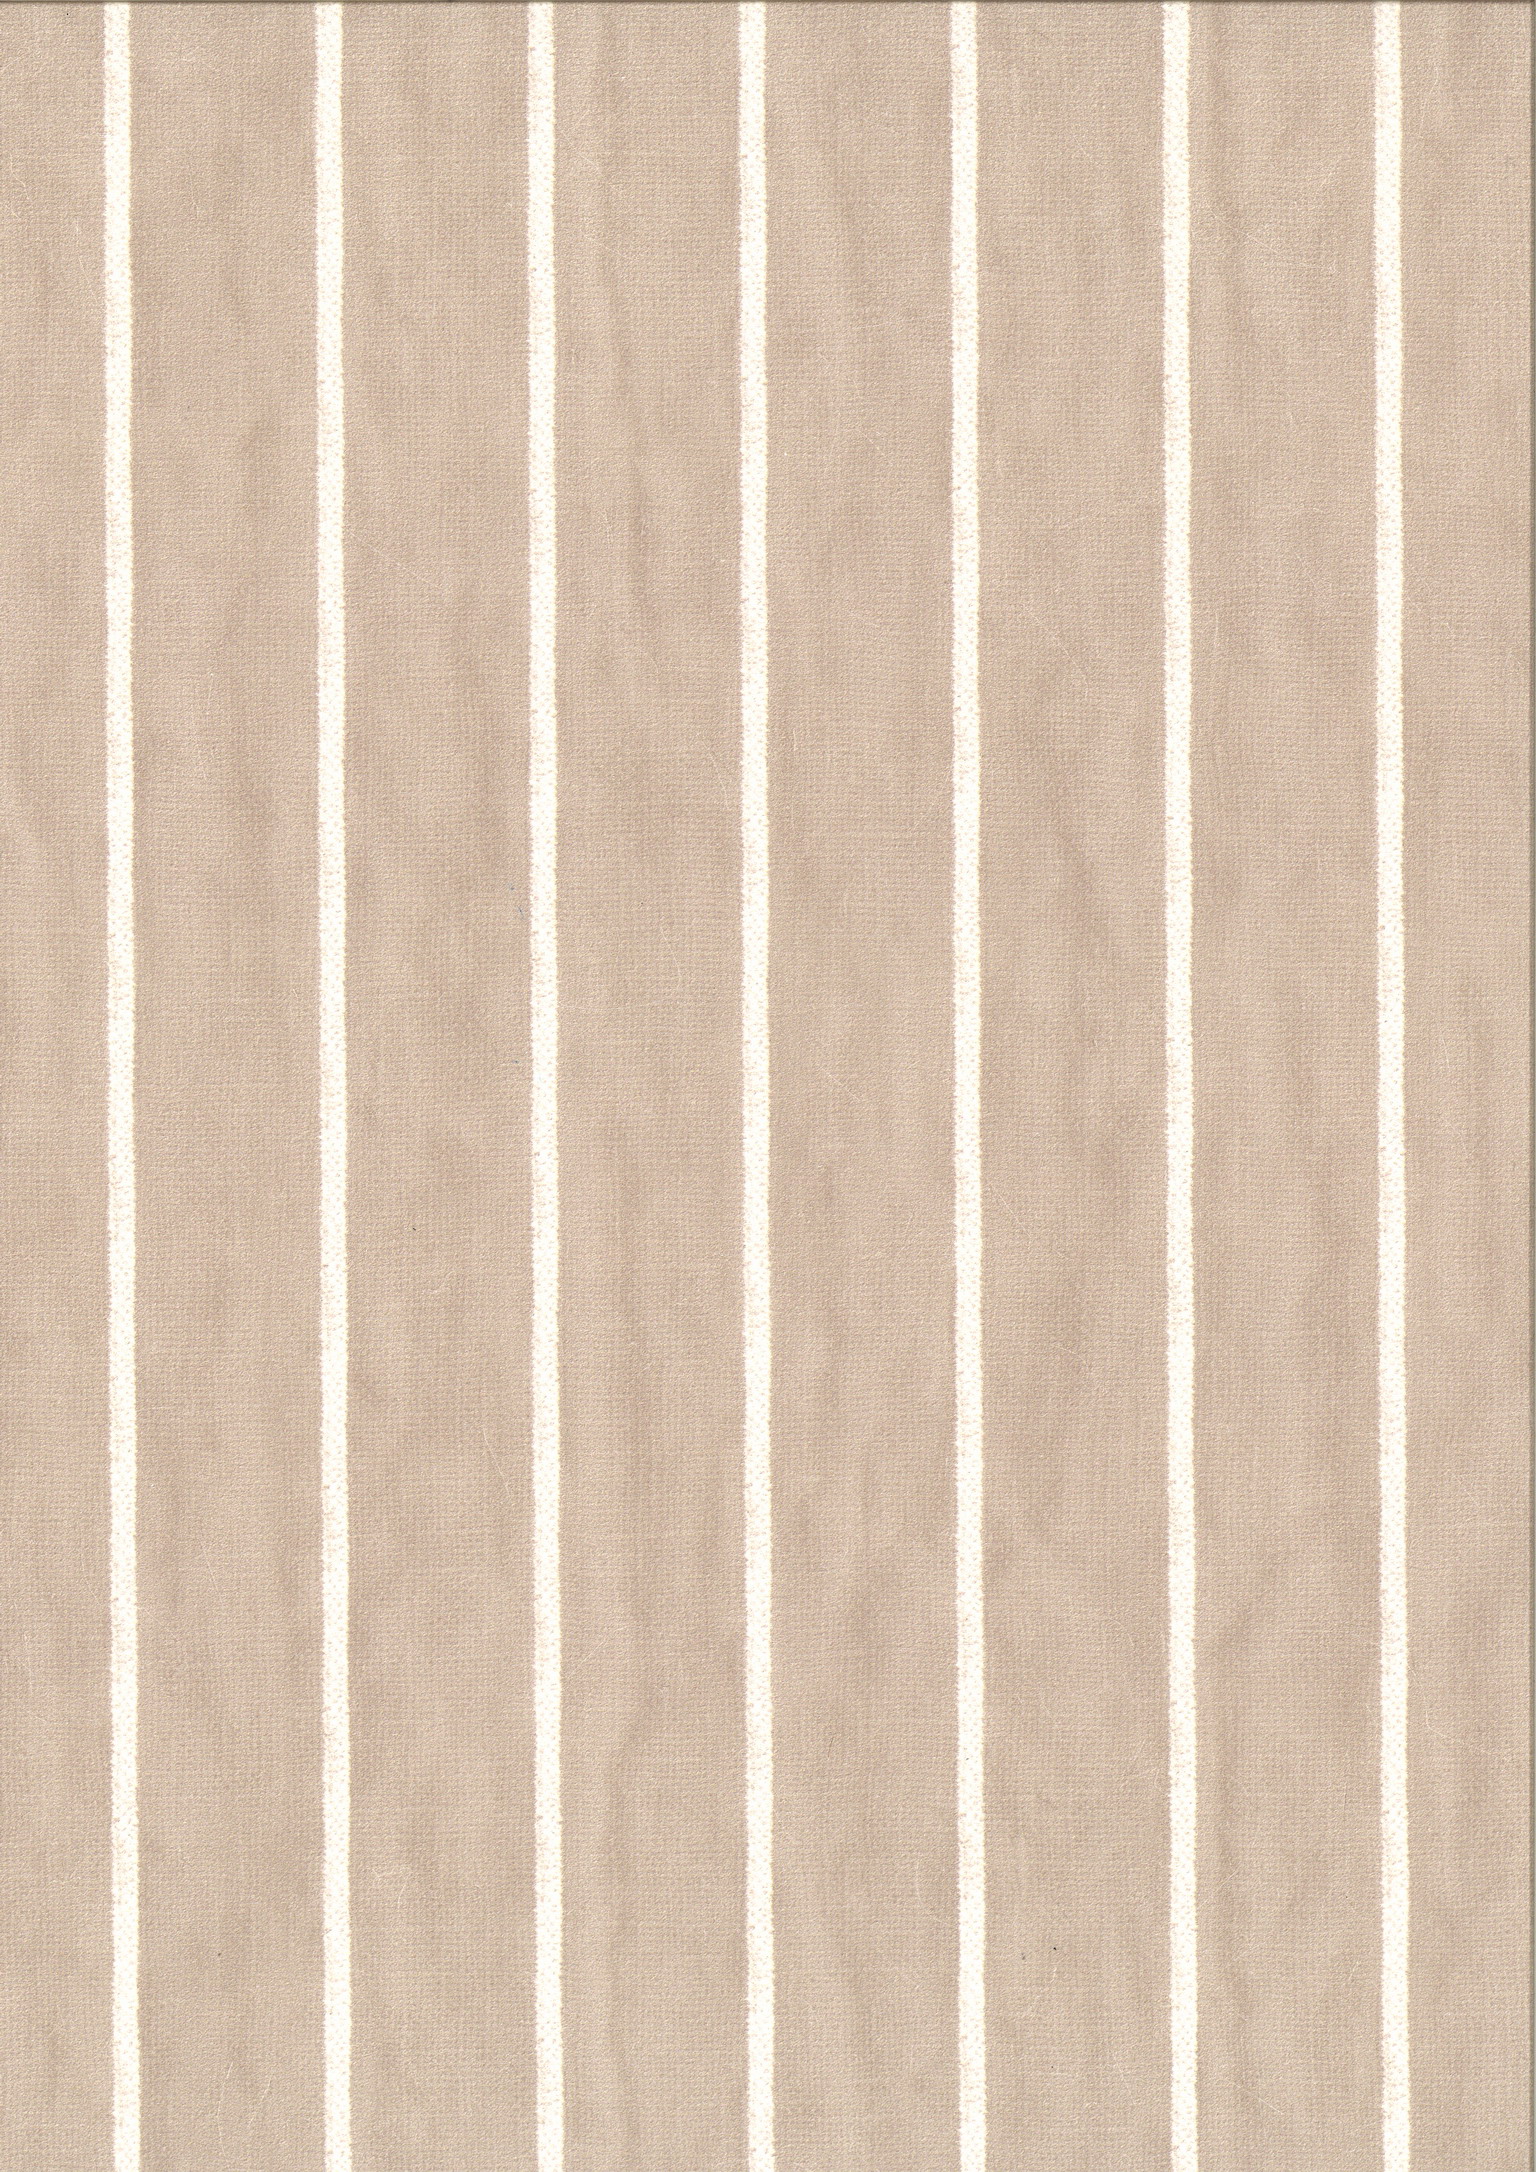 PIENZA GESSATO beige ivory stripes